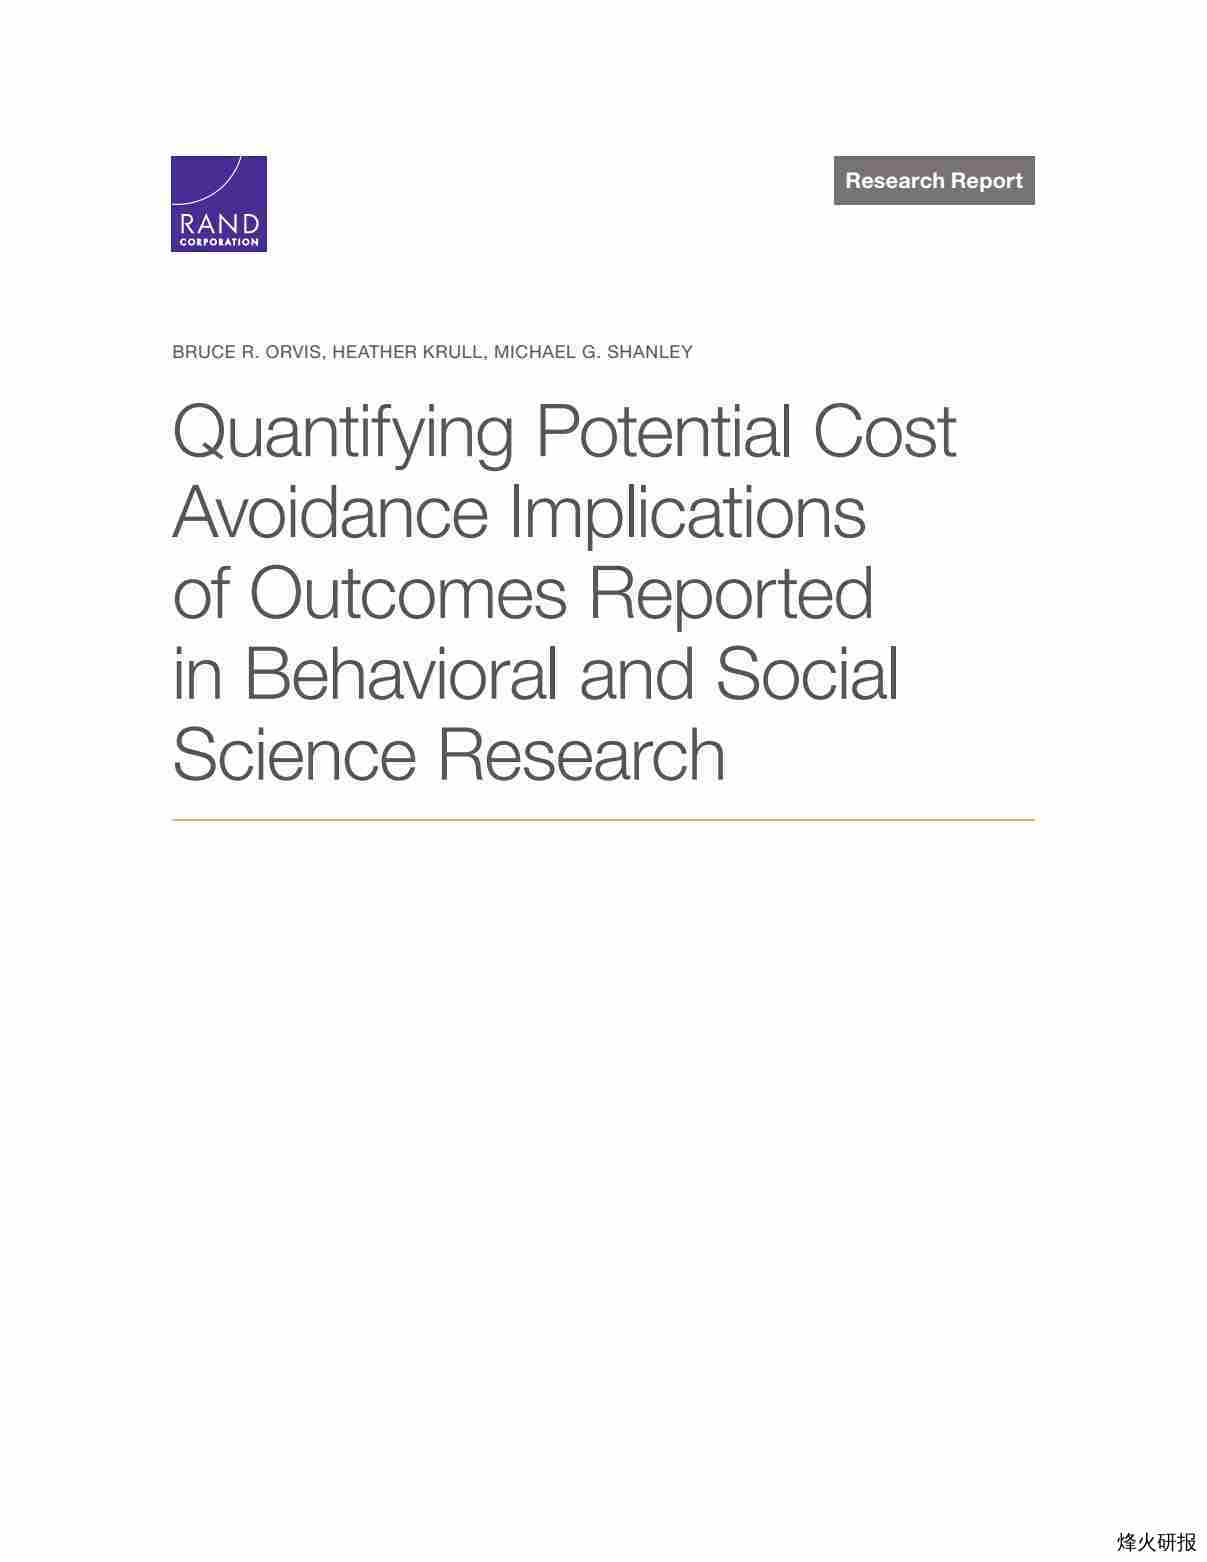 【兰德】Quantifying Potential Cost Avoidance Implications of Outcomes Reported in Behavioral and Social Science Research.pdf-第一页